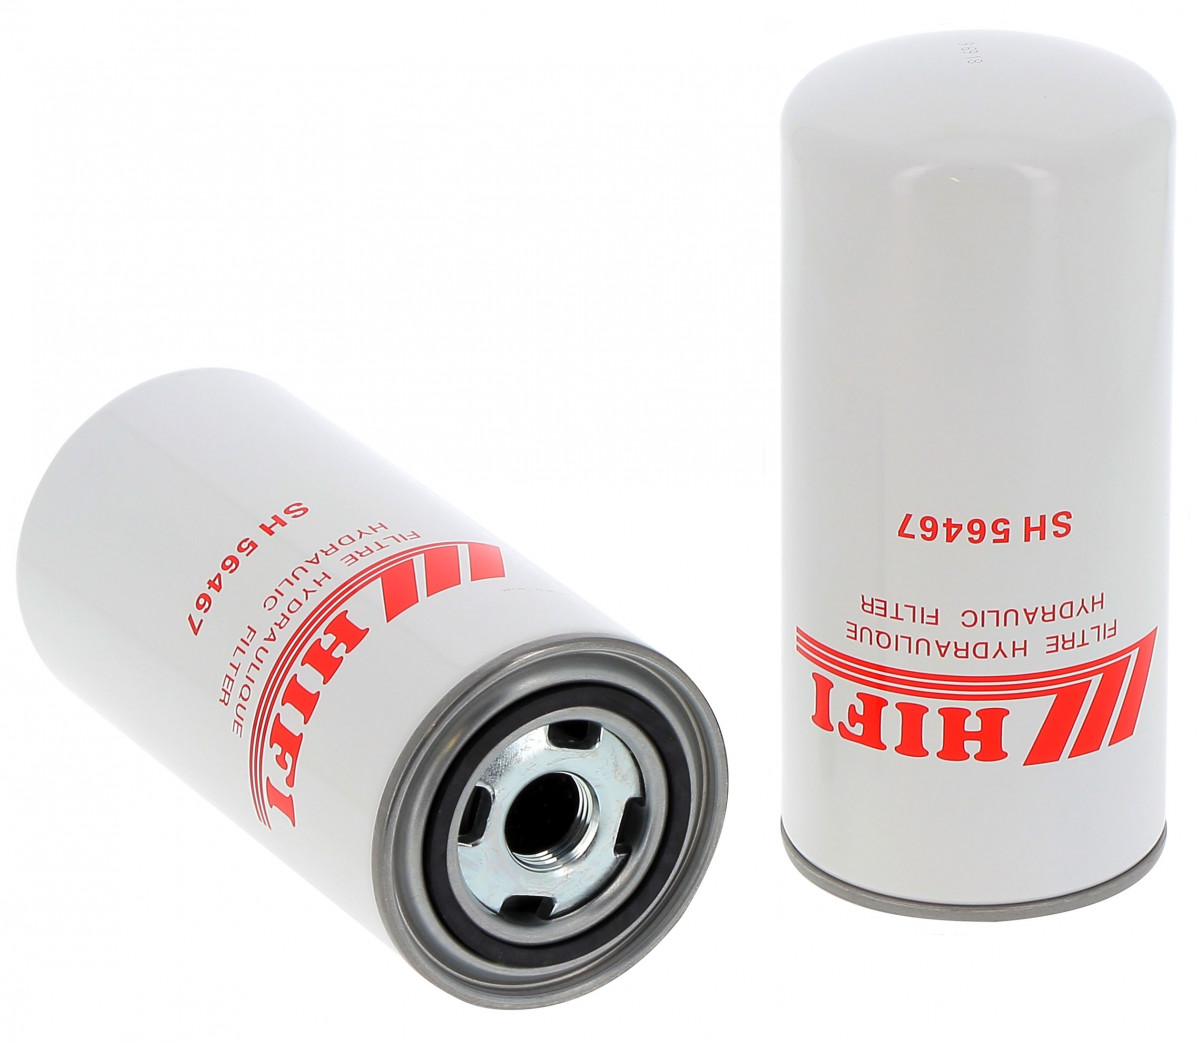 Filtr hydrauliczny  SH 56467 do HYUNDAI HSL 610